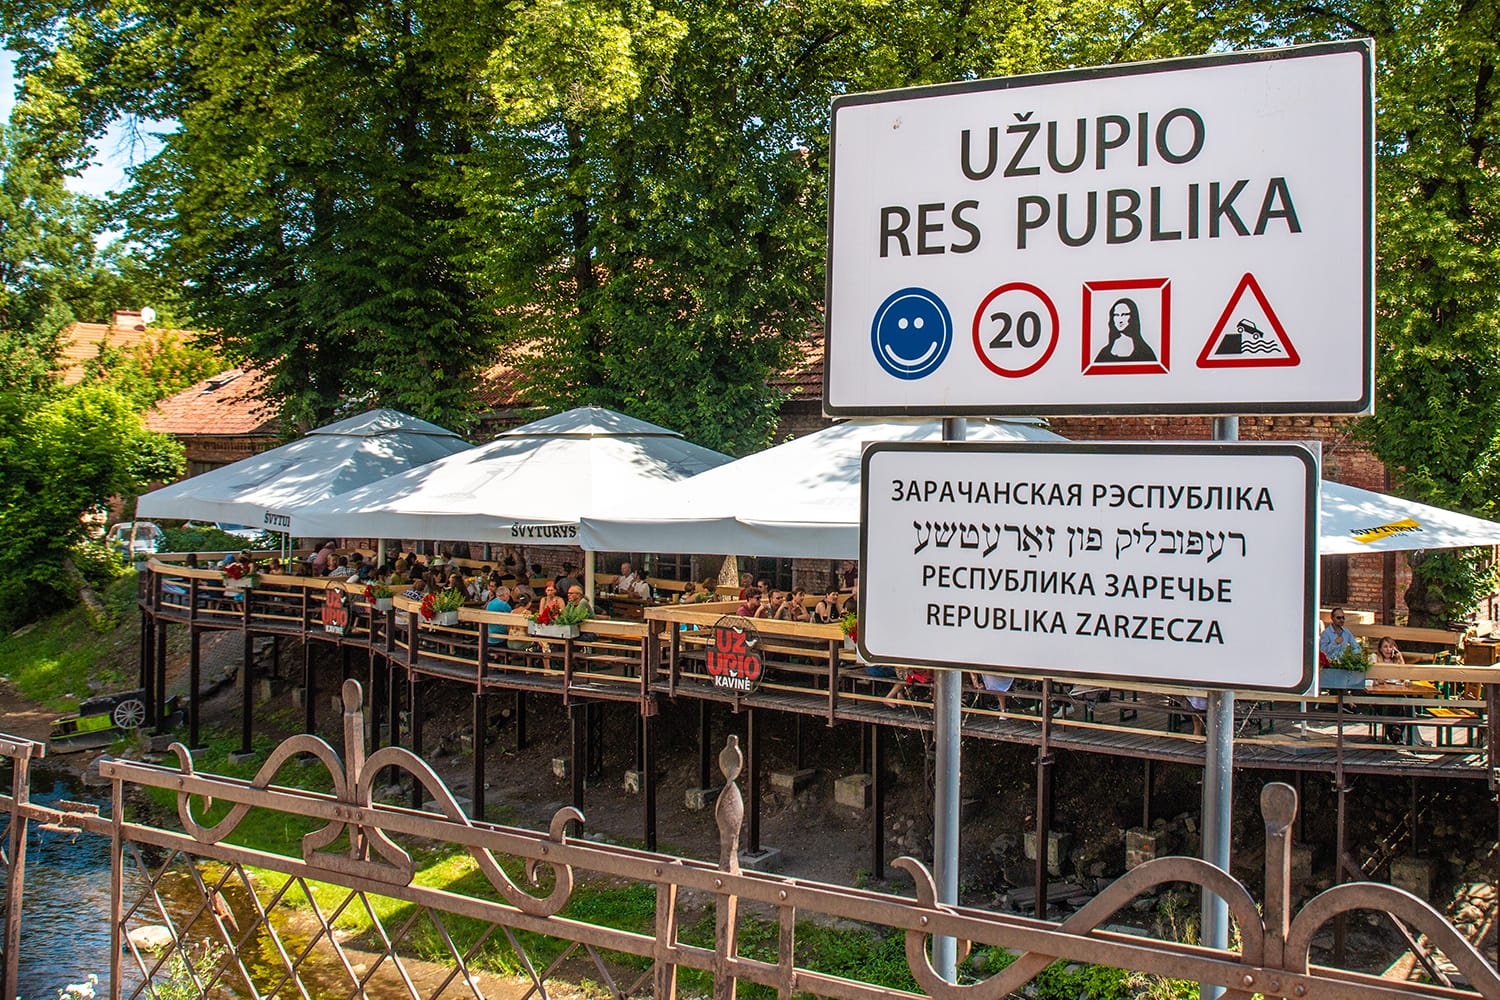 Uzupis Republic sign in Vilnius, Lithuania